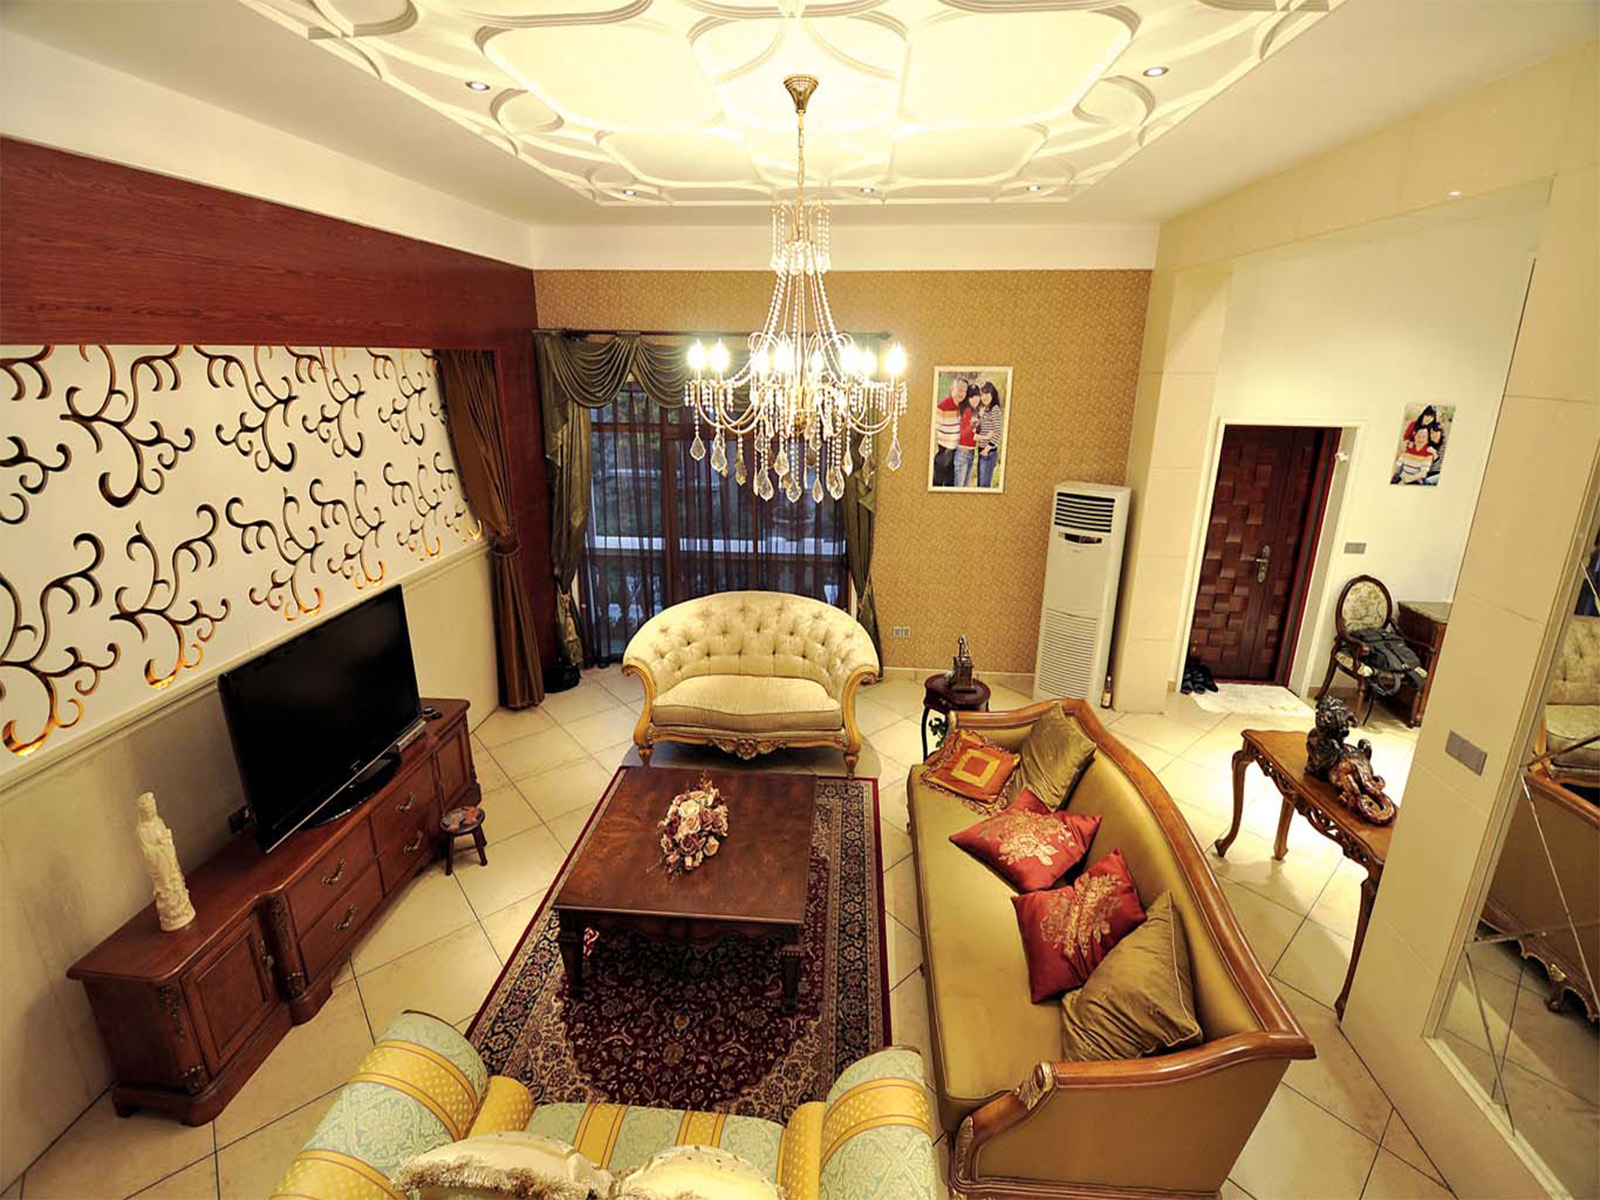 金地悦景台——客厅 简洁古典的沙发,墙面运用淡黄色的壁纸,整体以